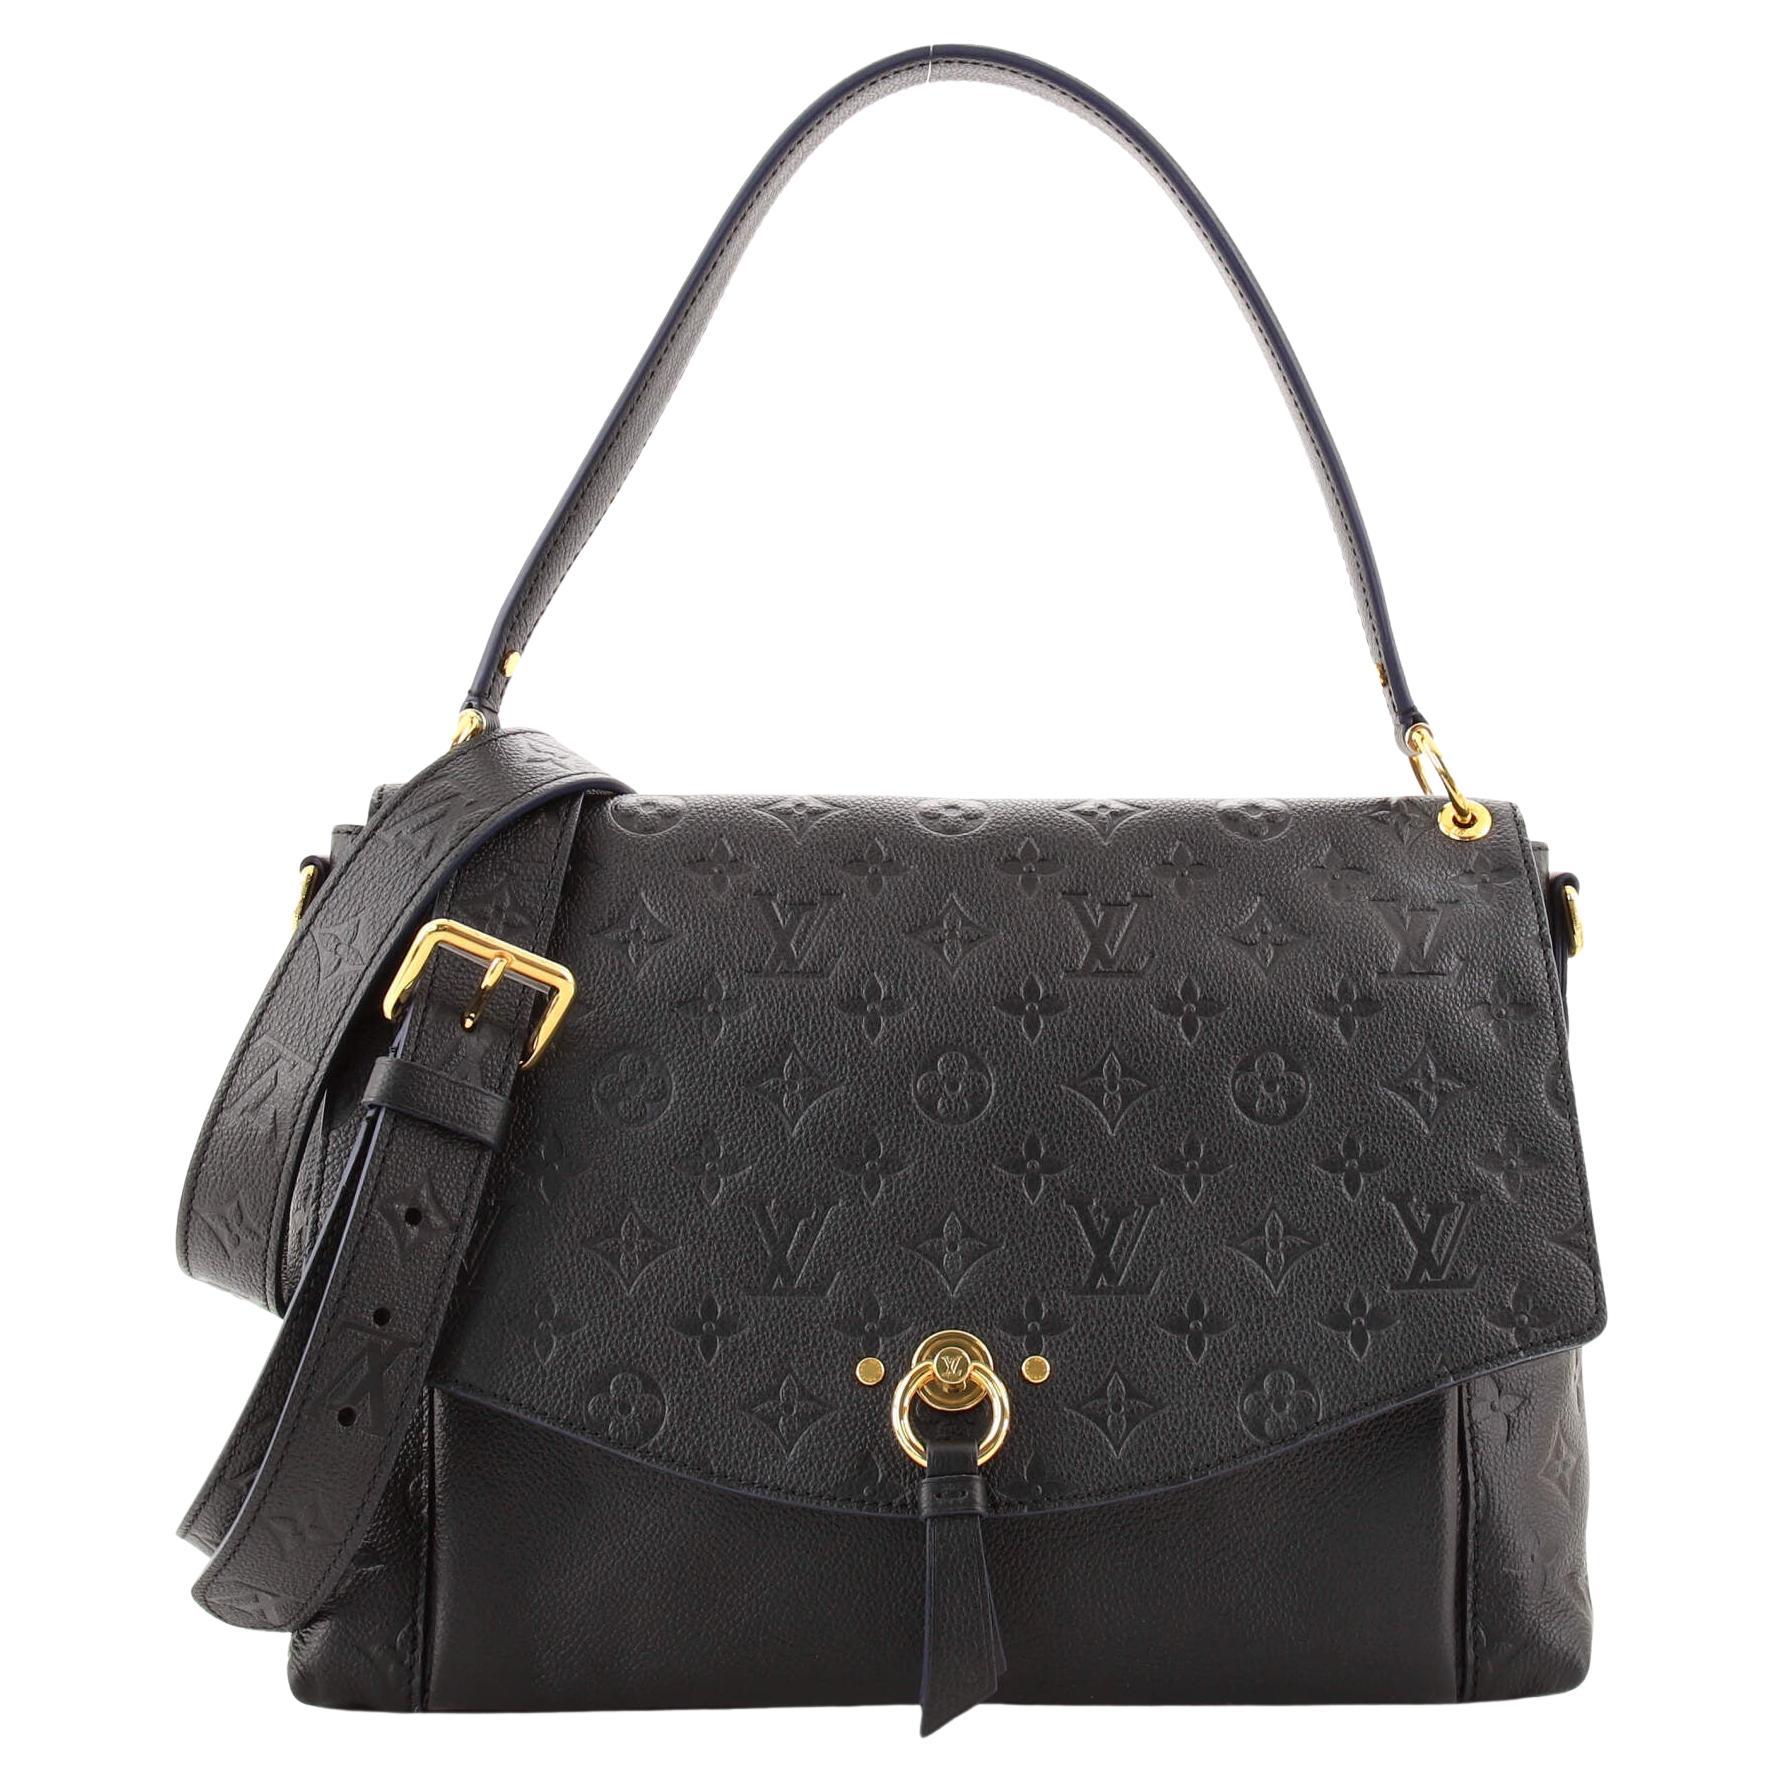 Louis Vuitton Blanche Handbag Monogram Empreinte Leather MM